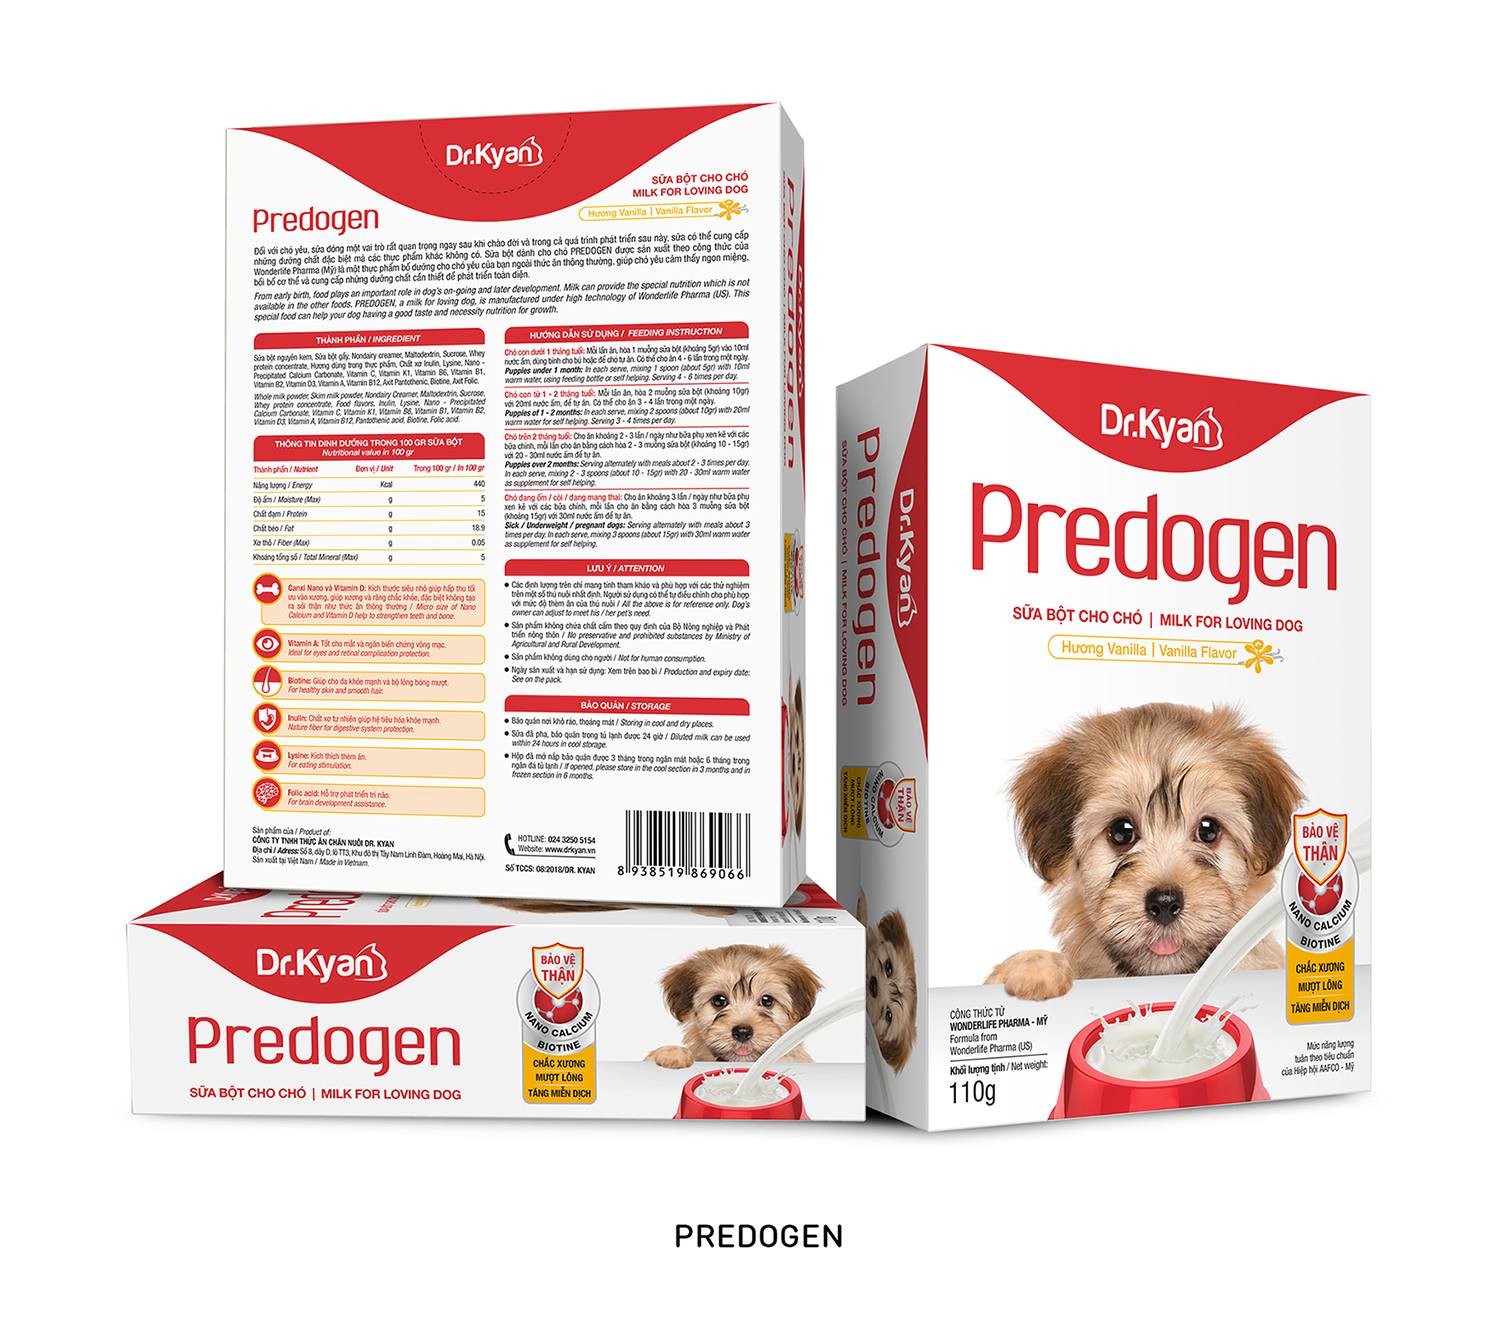 Sữa bột cho chó con Dr.Kyan Predogen sử dụng được cho chó con 1 tháng tuổi